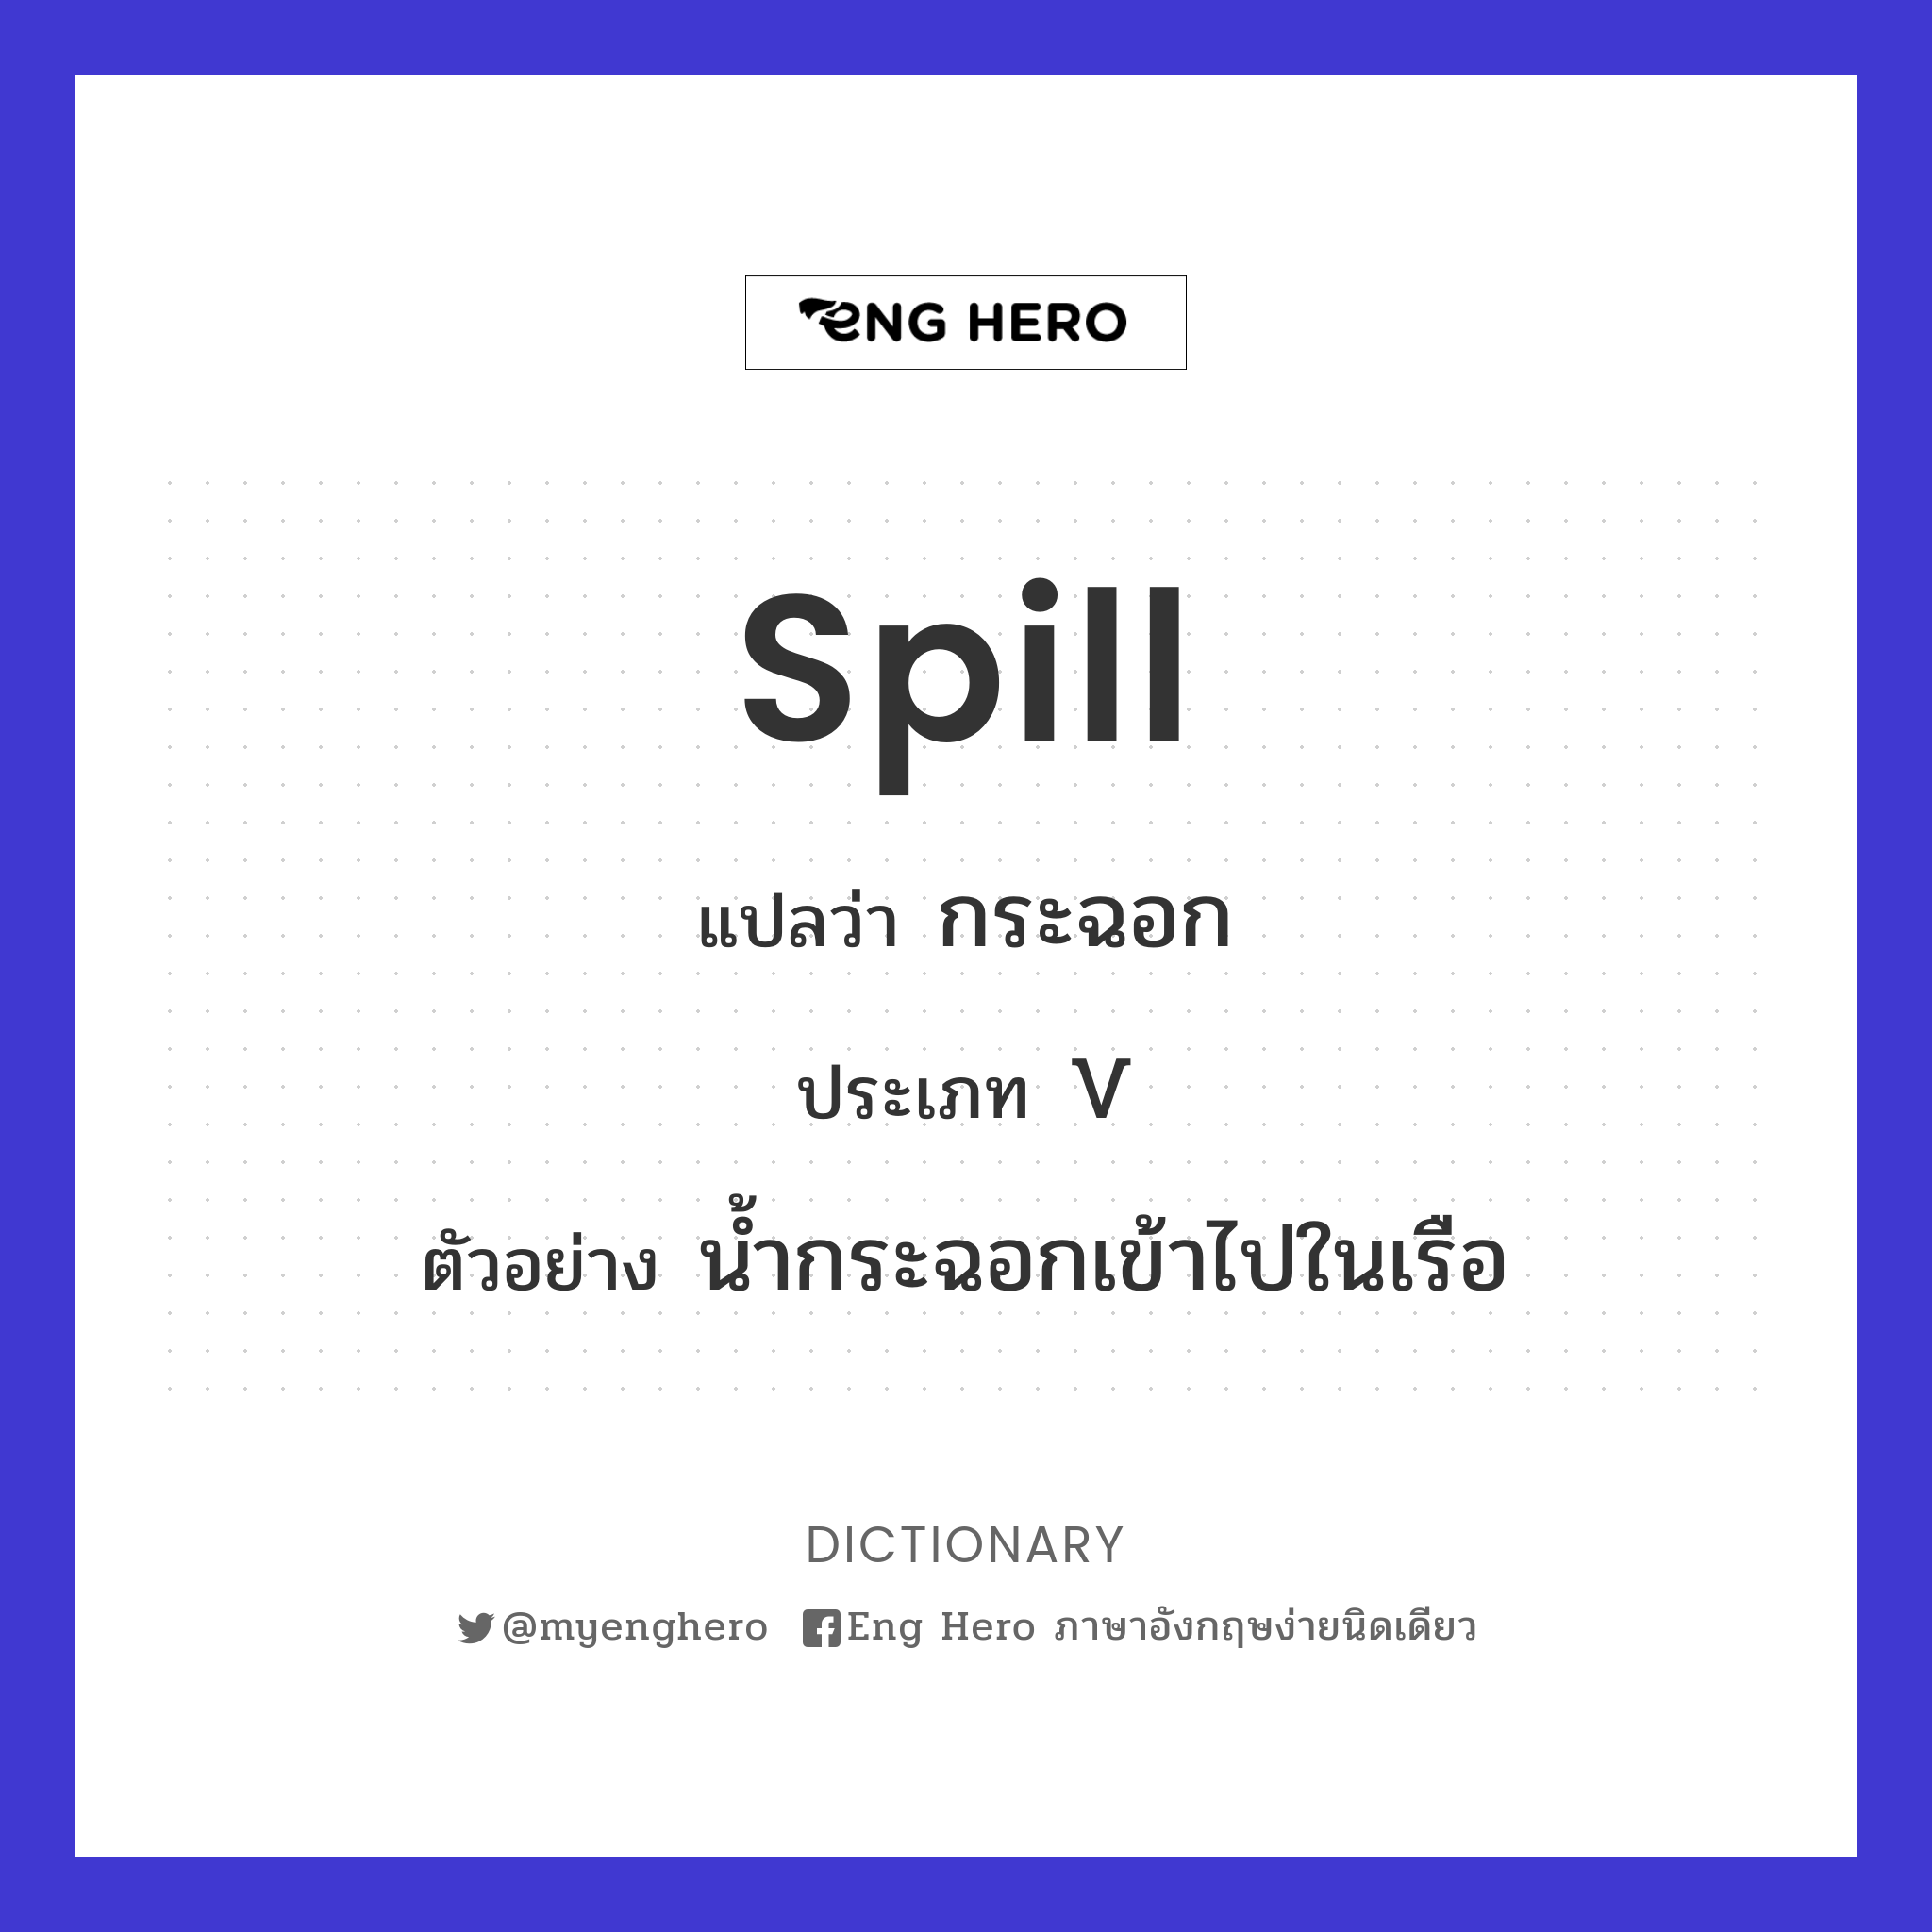 spill